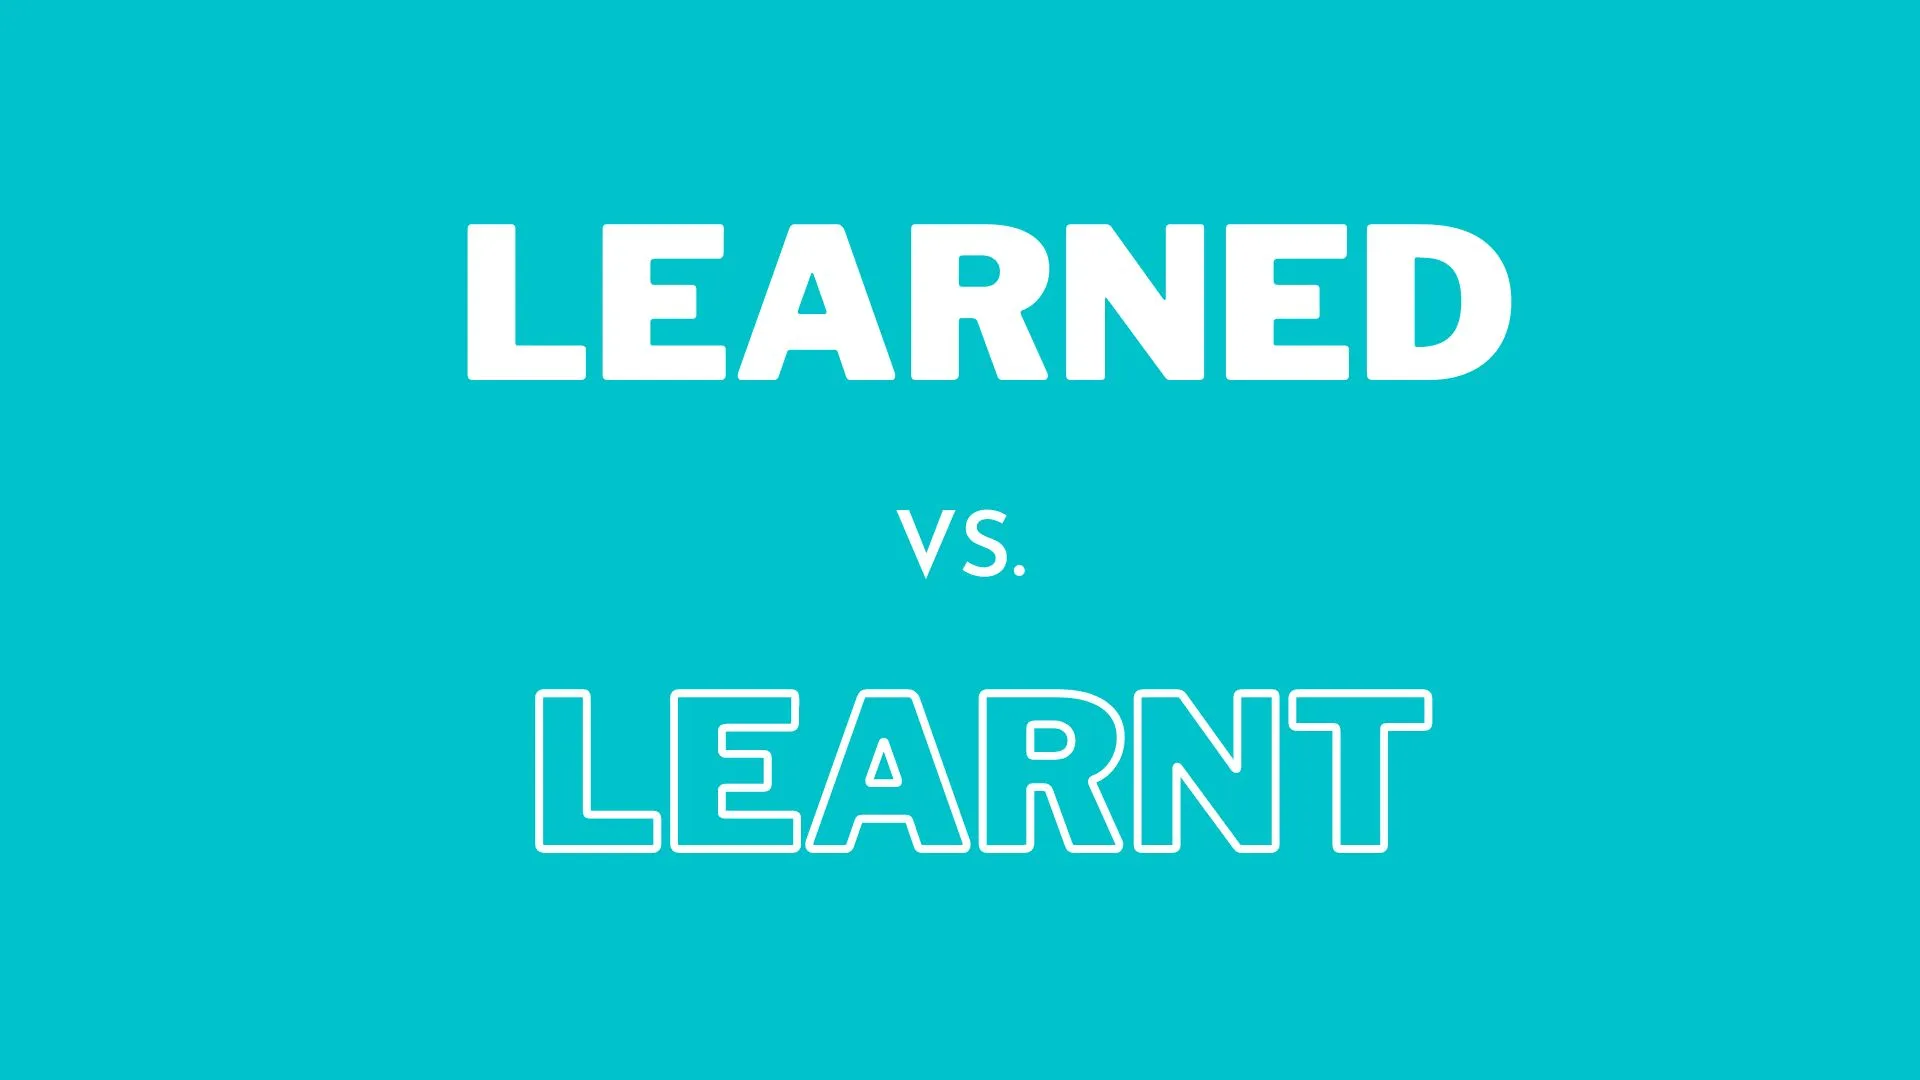 英語の文法での「learned」と「learnt」の違いを示すイラスト、英語の教師と学習者向け。